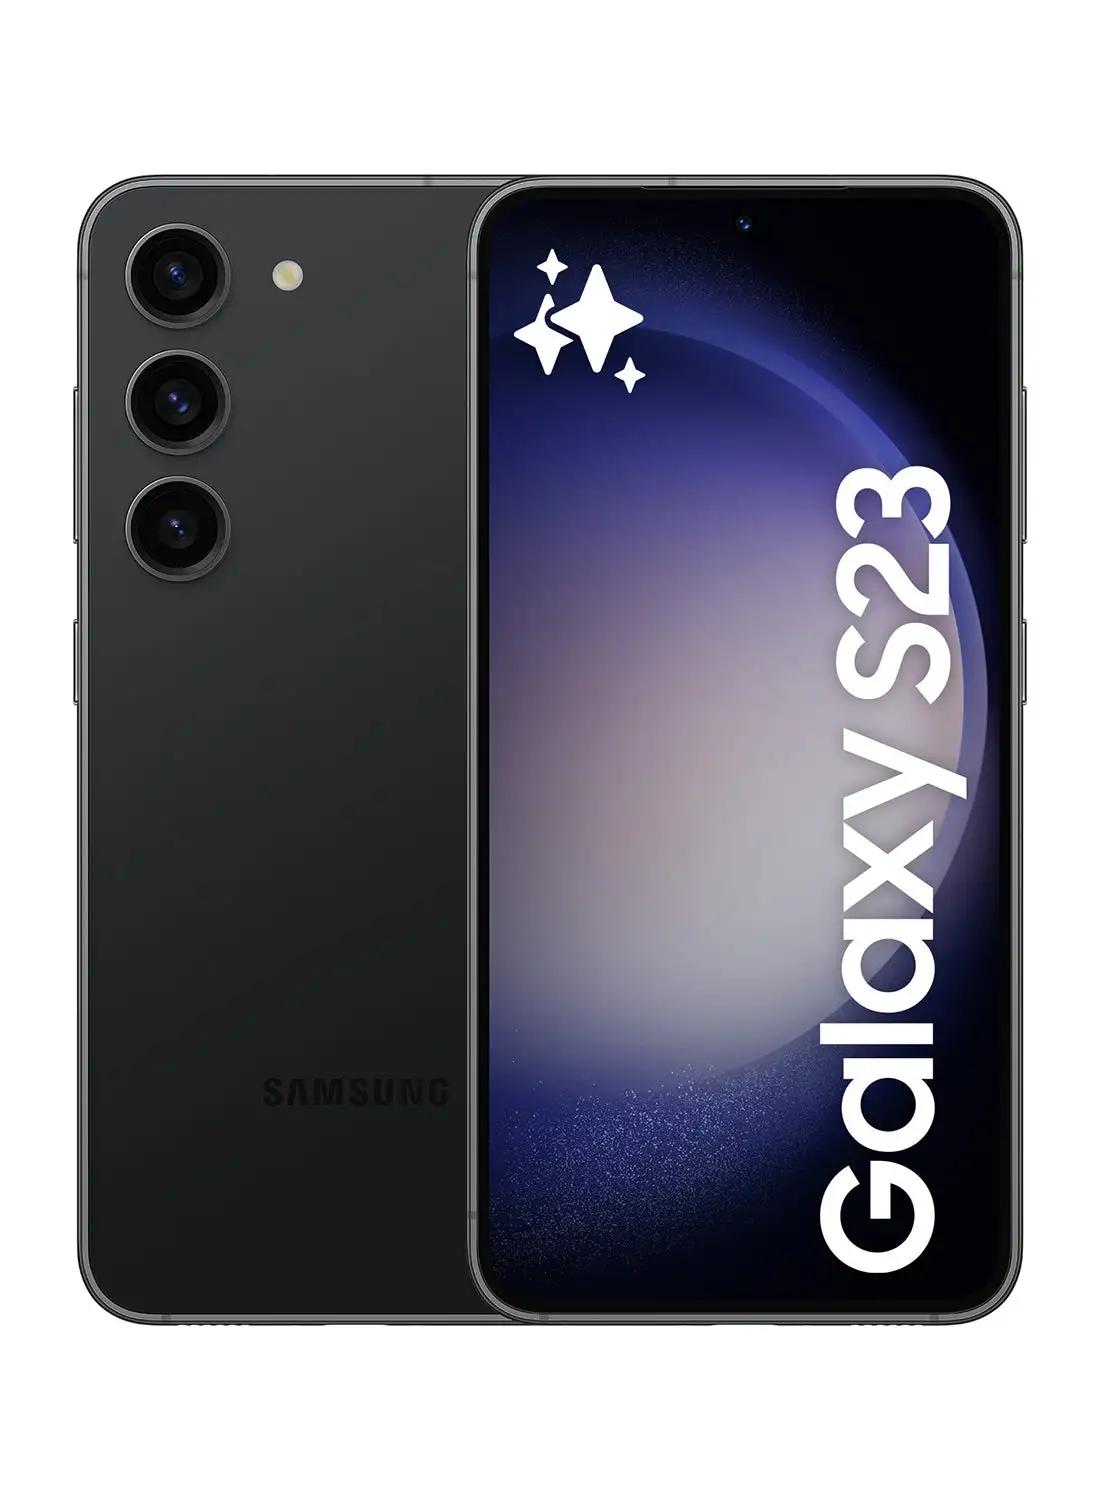 سامسونج جالاكسي S23 5G ثنائي الشريحة باللون الأسود فانتوم وذاكرة الوصول العشوائي (RAM) سعة 8 جيجابايت وسعة 256 جيجابايت - إصدار الشرق الأوسط